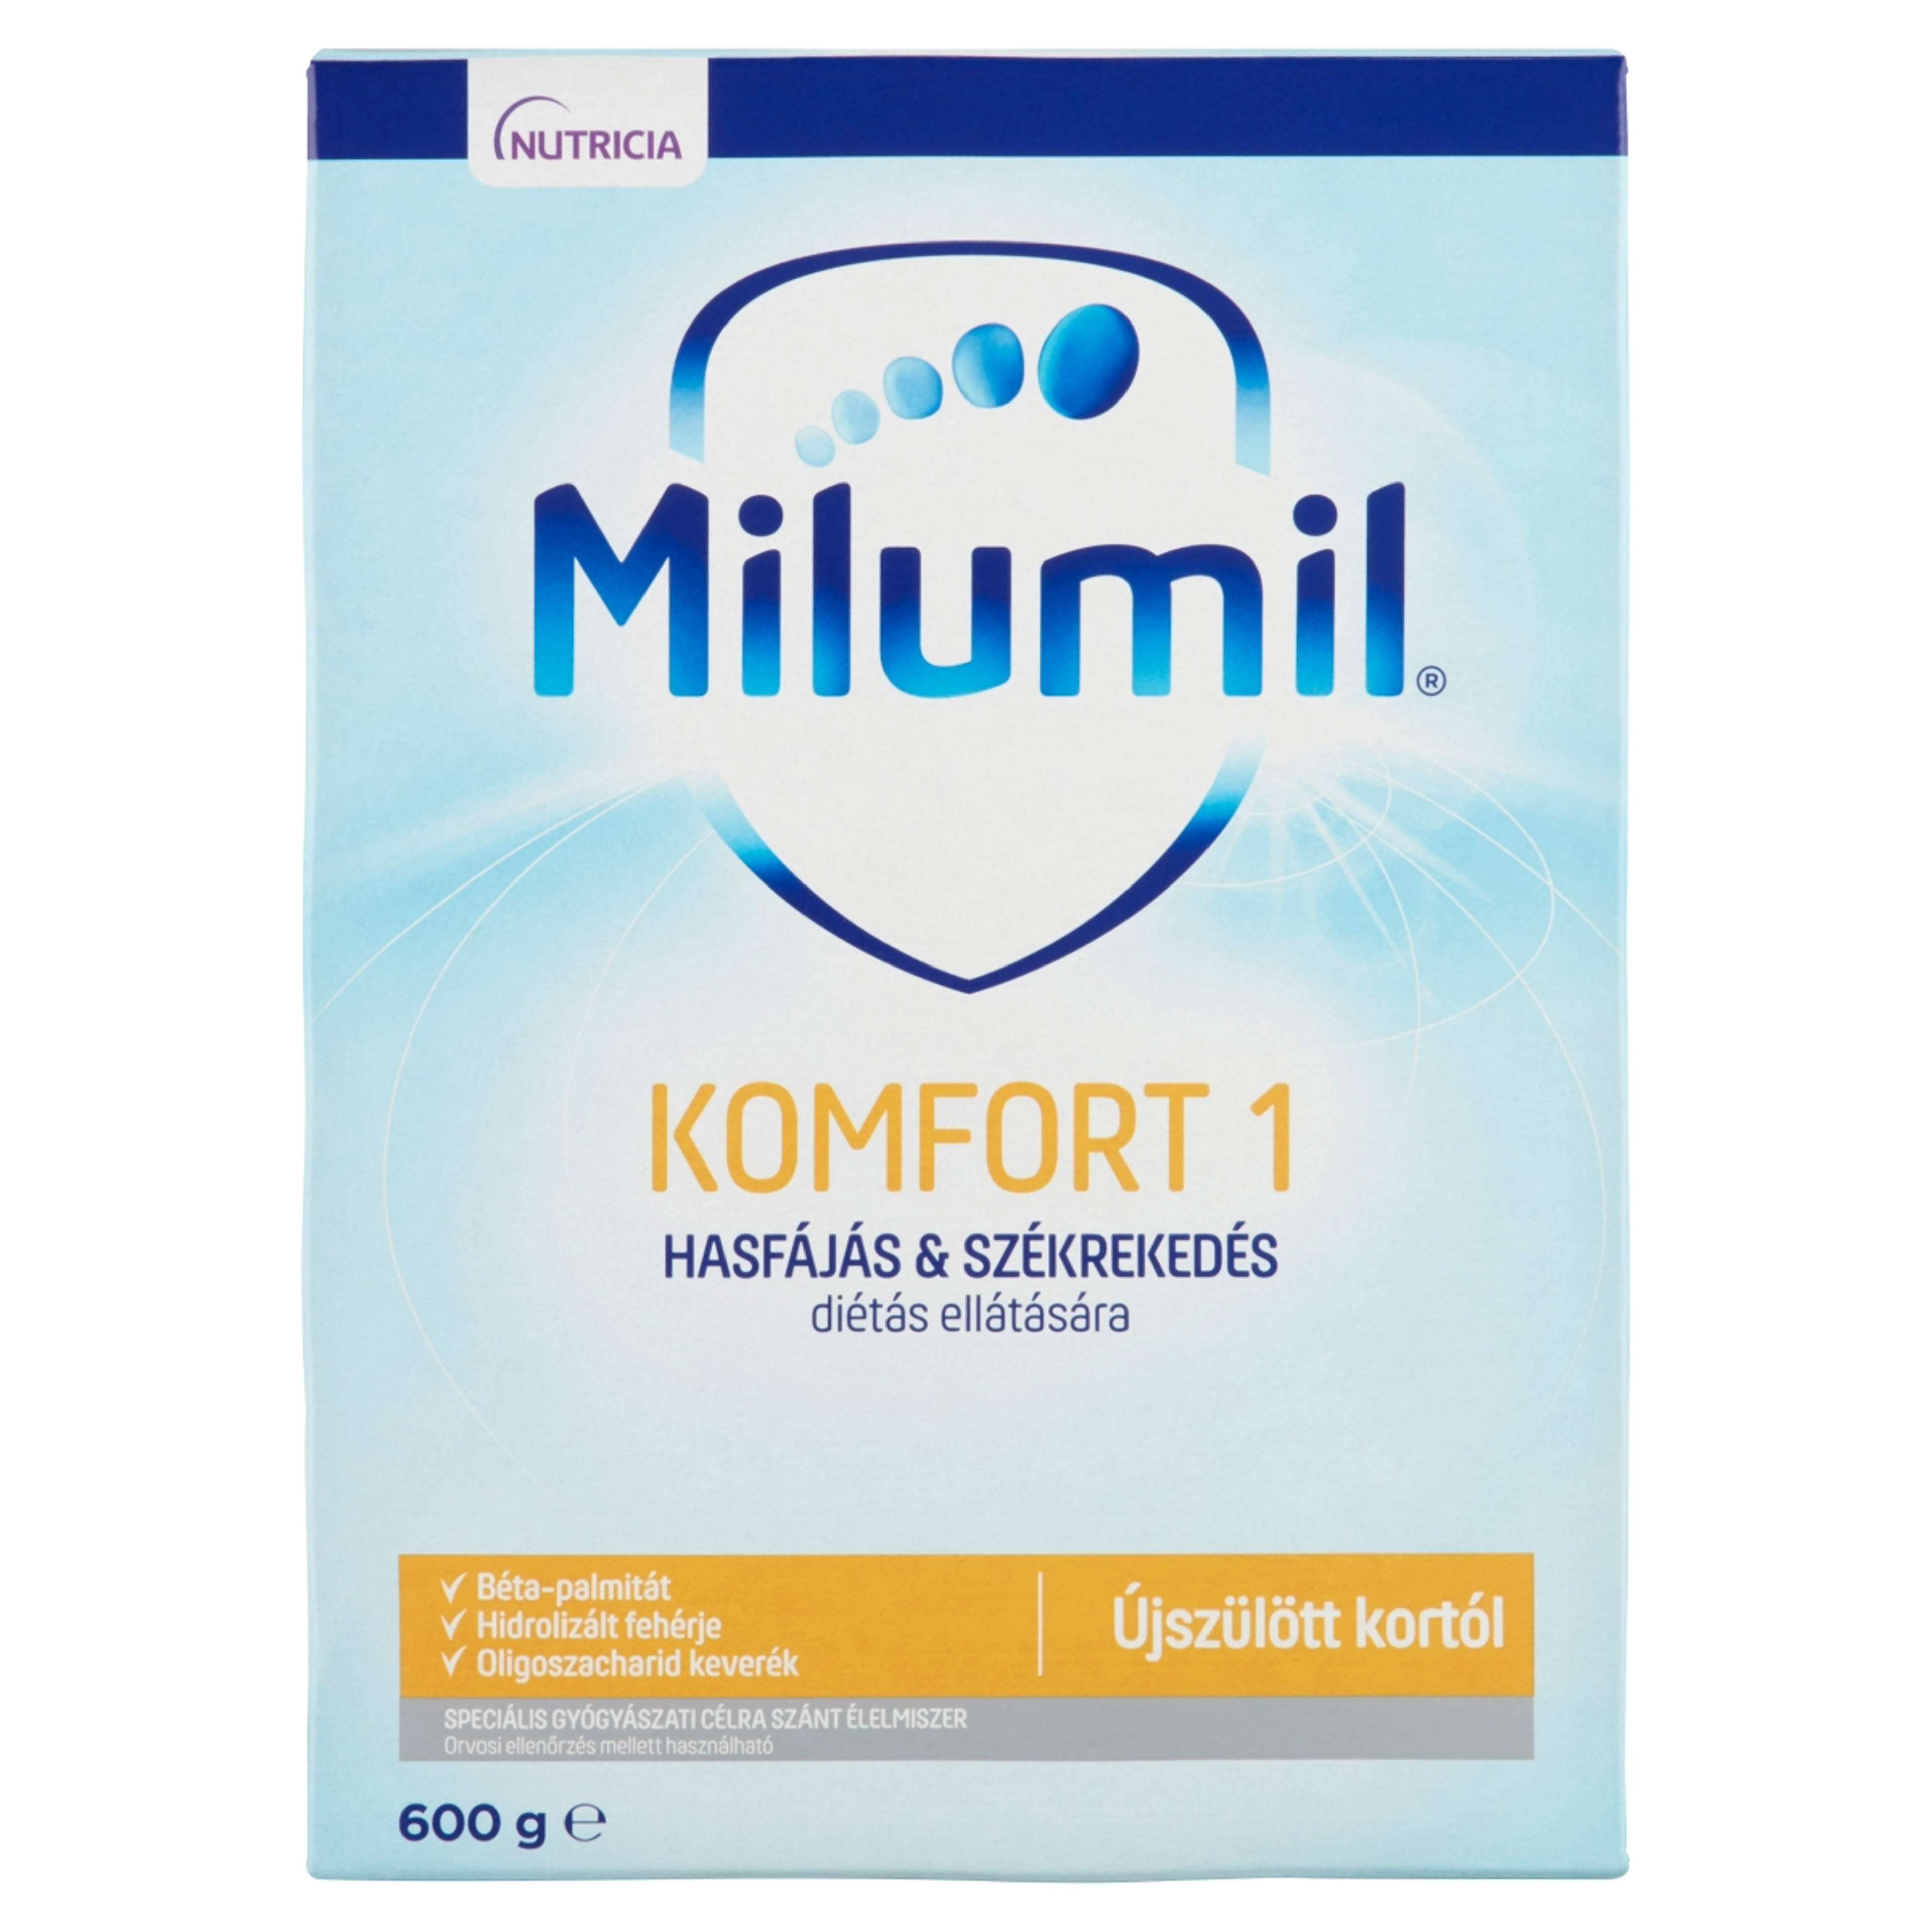 Milumil Komfort 1 speciális gyógyászati célra szánt élelmiszer 0 hónapos kortól - 600 g